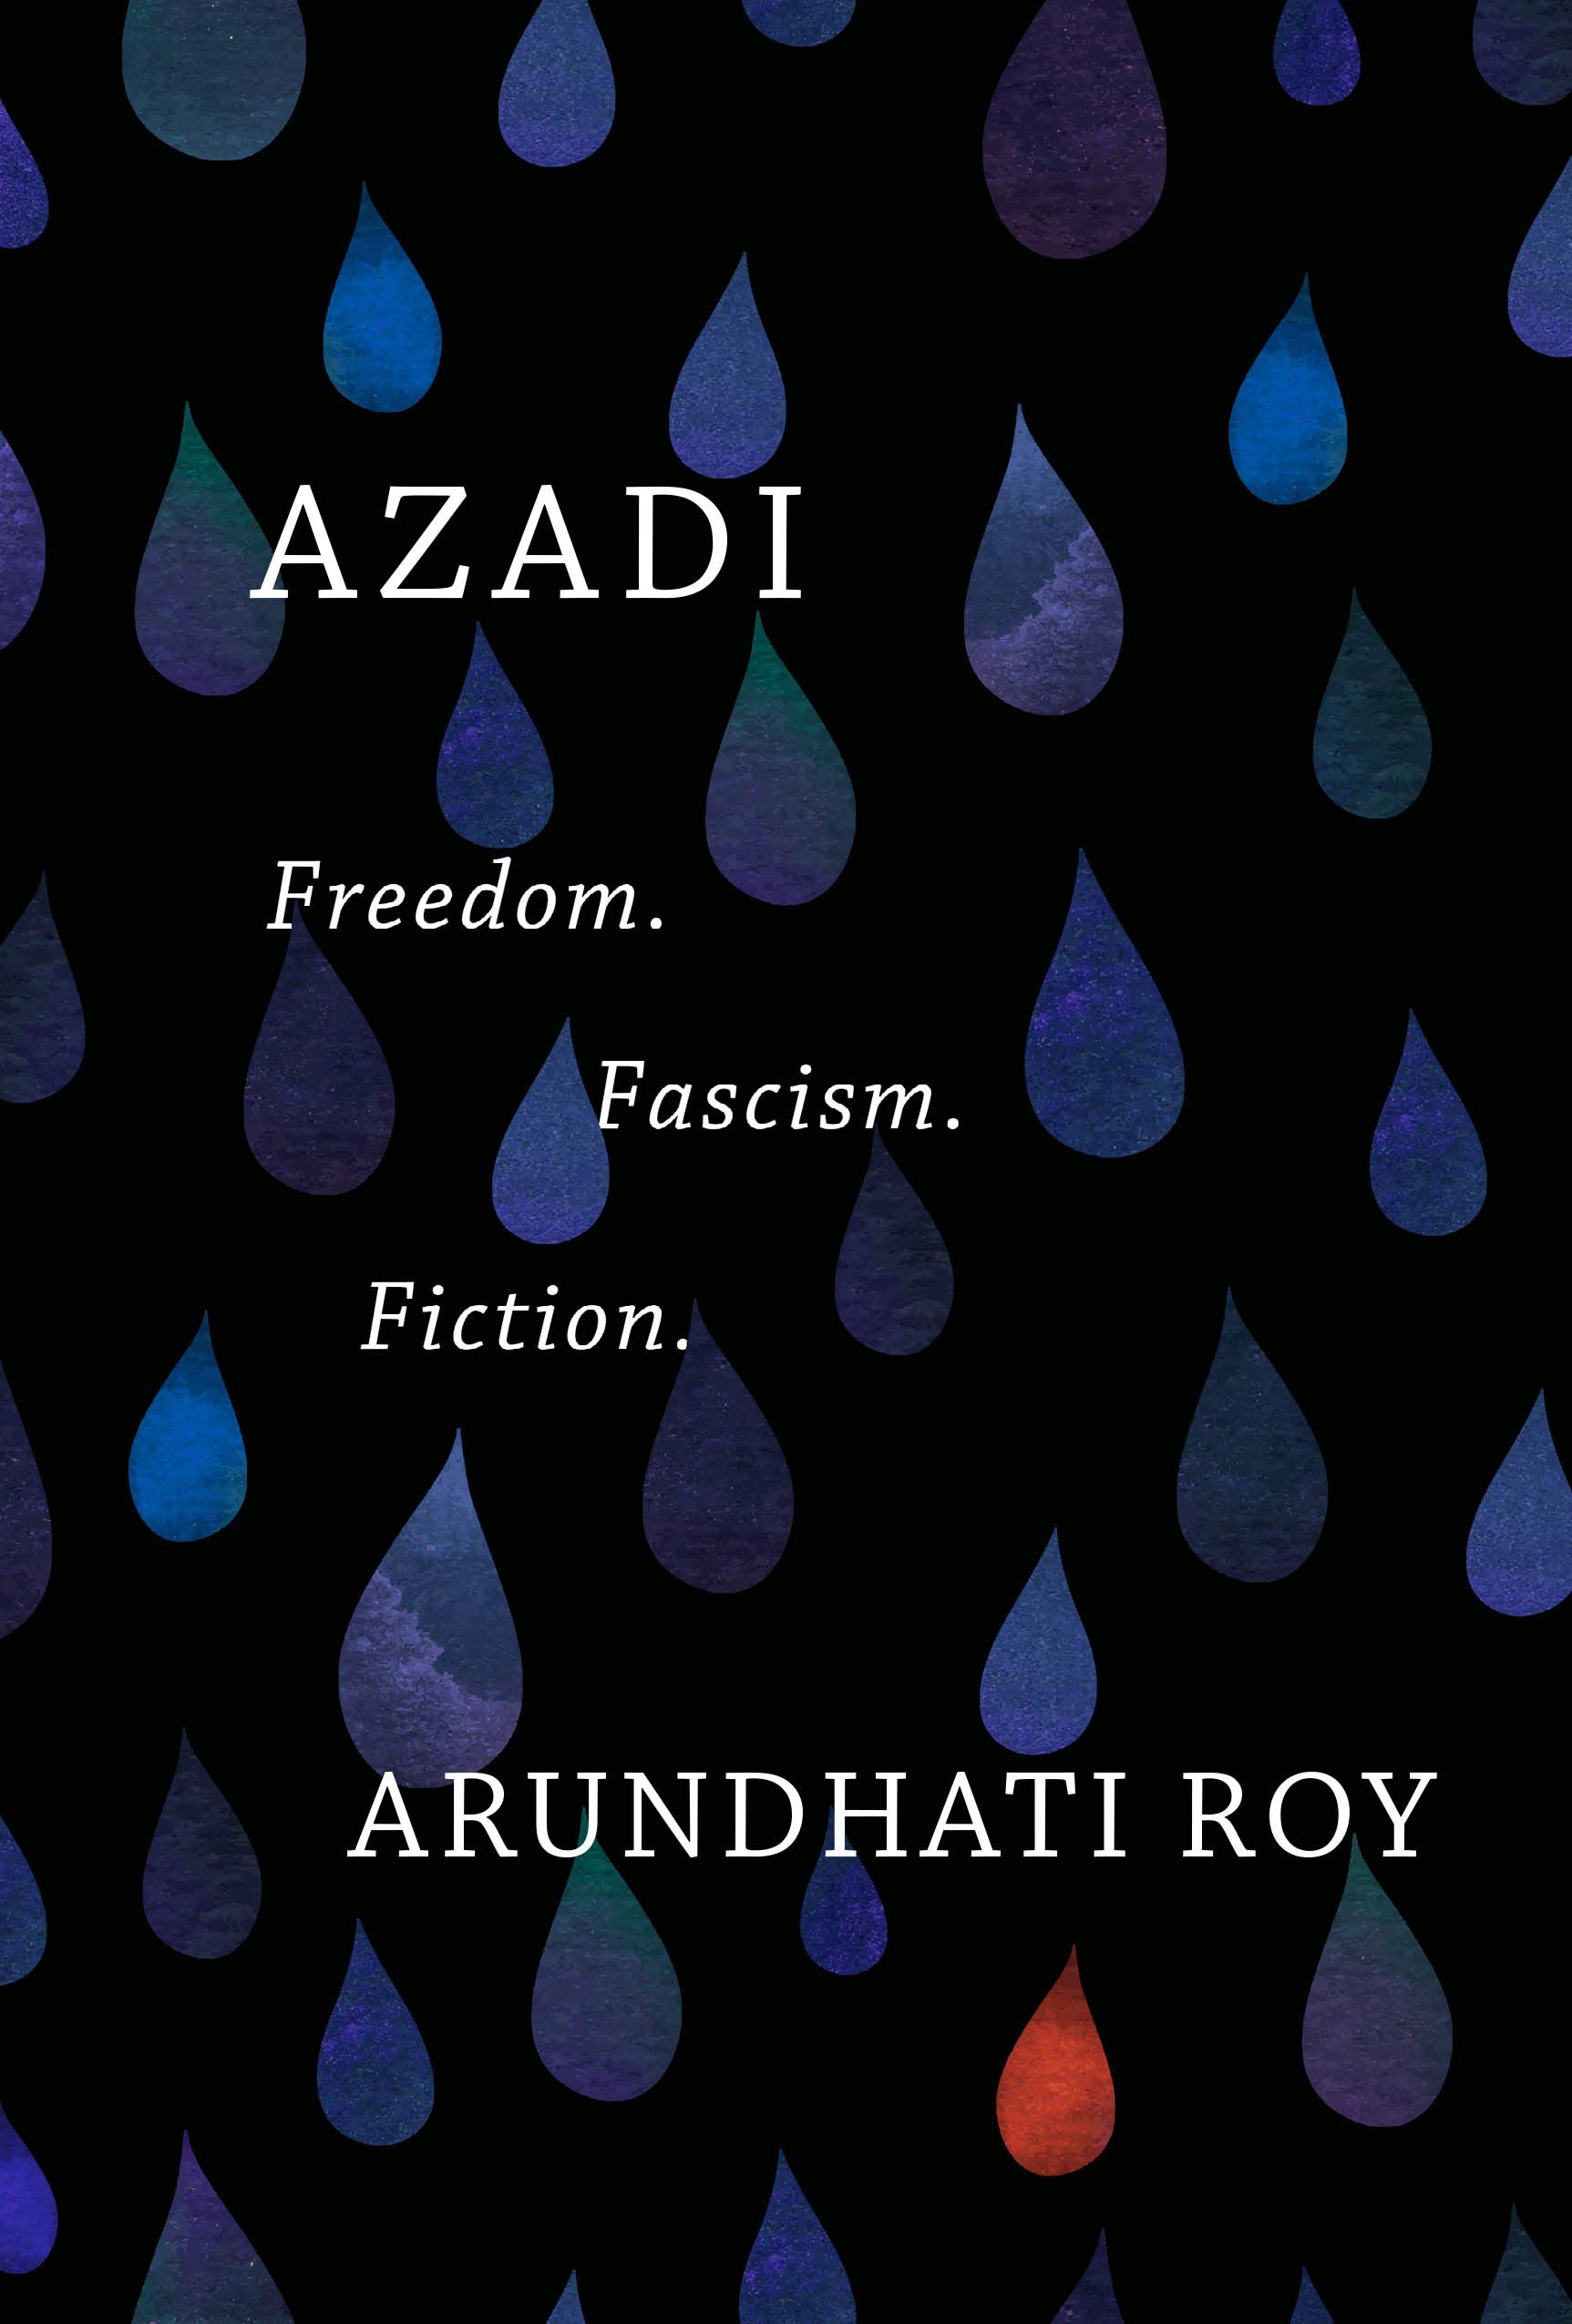 Umschlag von Arundhati Roys "Azadi: Freiheit. Faschismus. Fiction", erschienen auf Englisch bei Haymarket Books